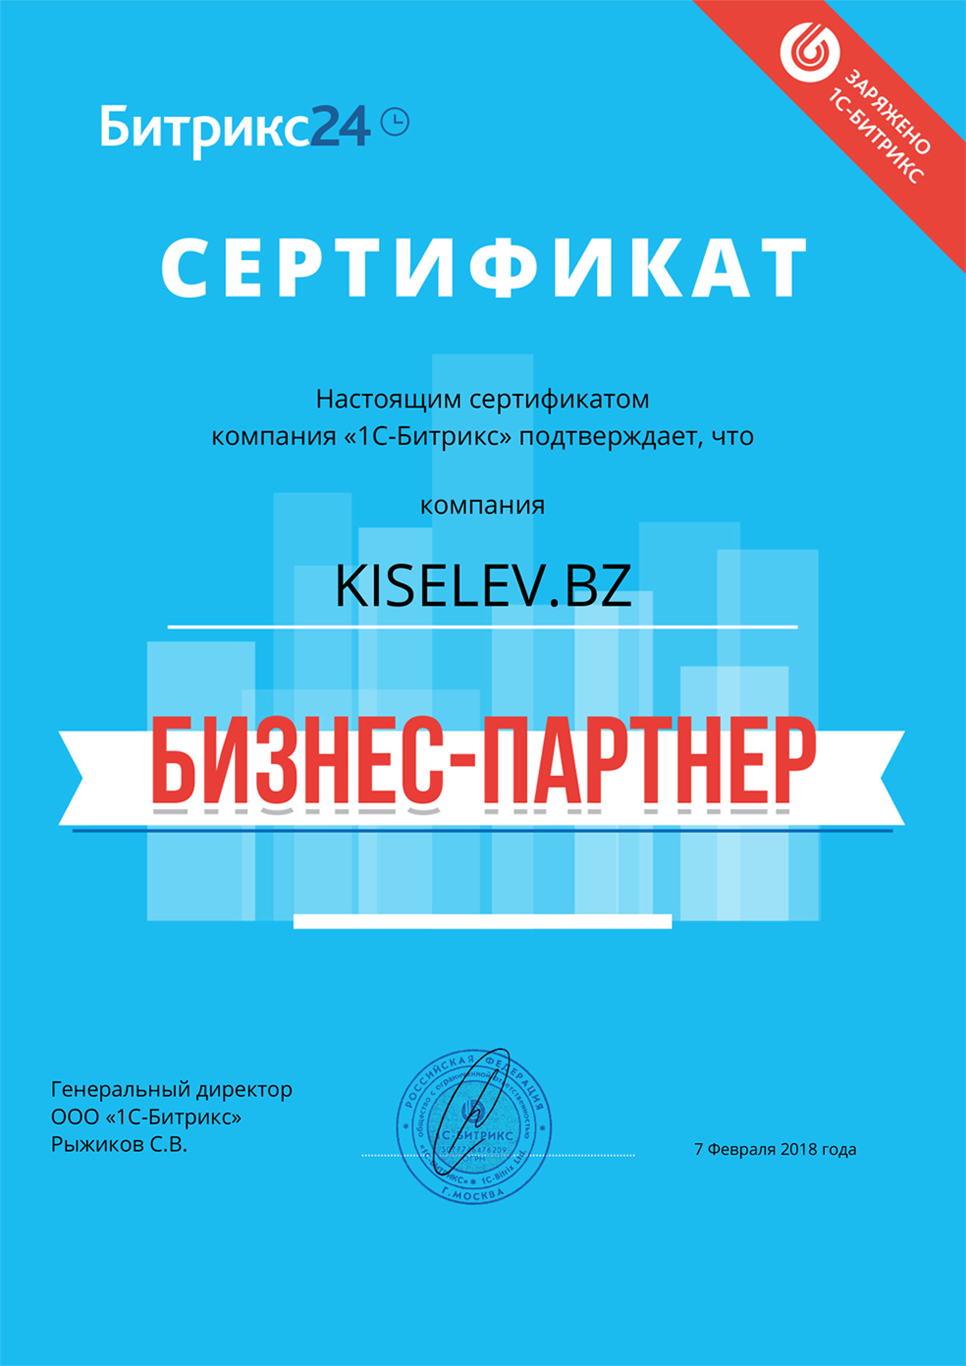 Сертификат партнёра по АМОСРМ в Саяногорске